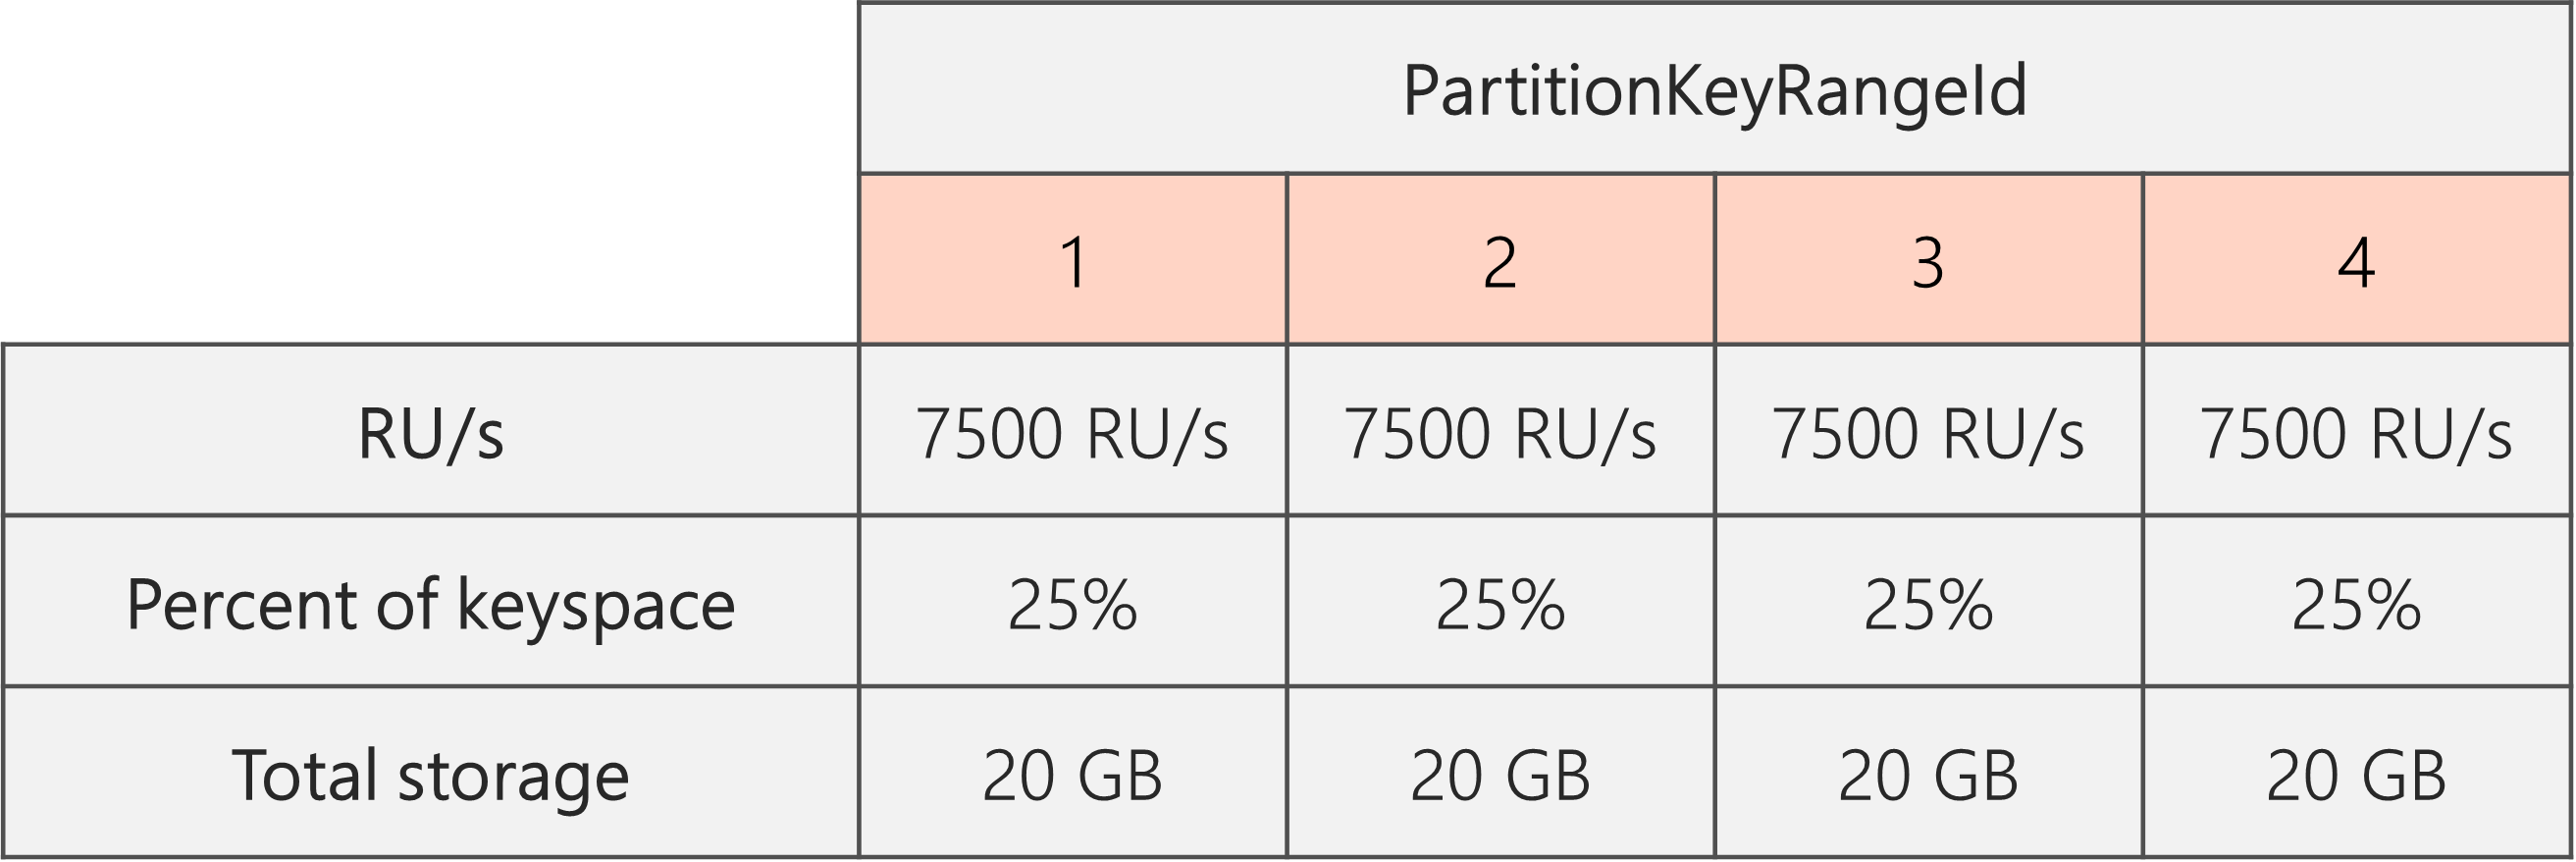 Setelah pemisahan selesai dan RU telah diturunkan dari 40.000 RU menjadi 30.000 RU, ada 4 PartitionKeyRangeIds, masing-masing dengan 7500 RU dan 25% dari total keyspace (20 GB)